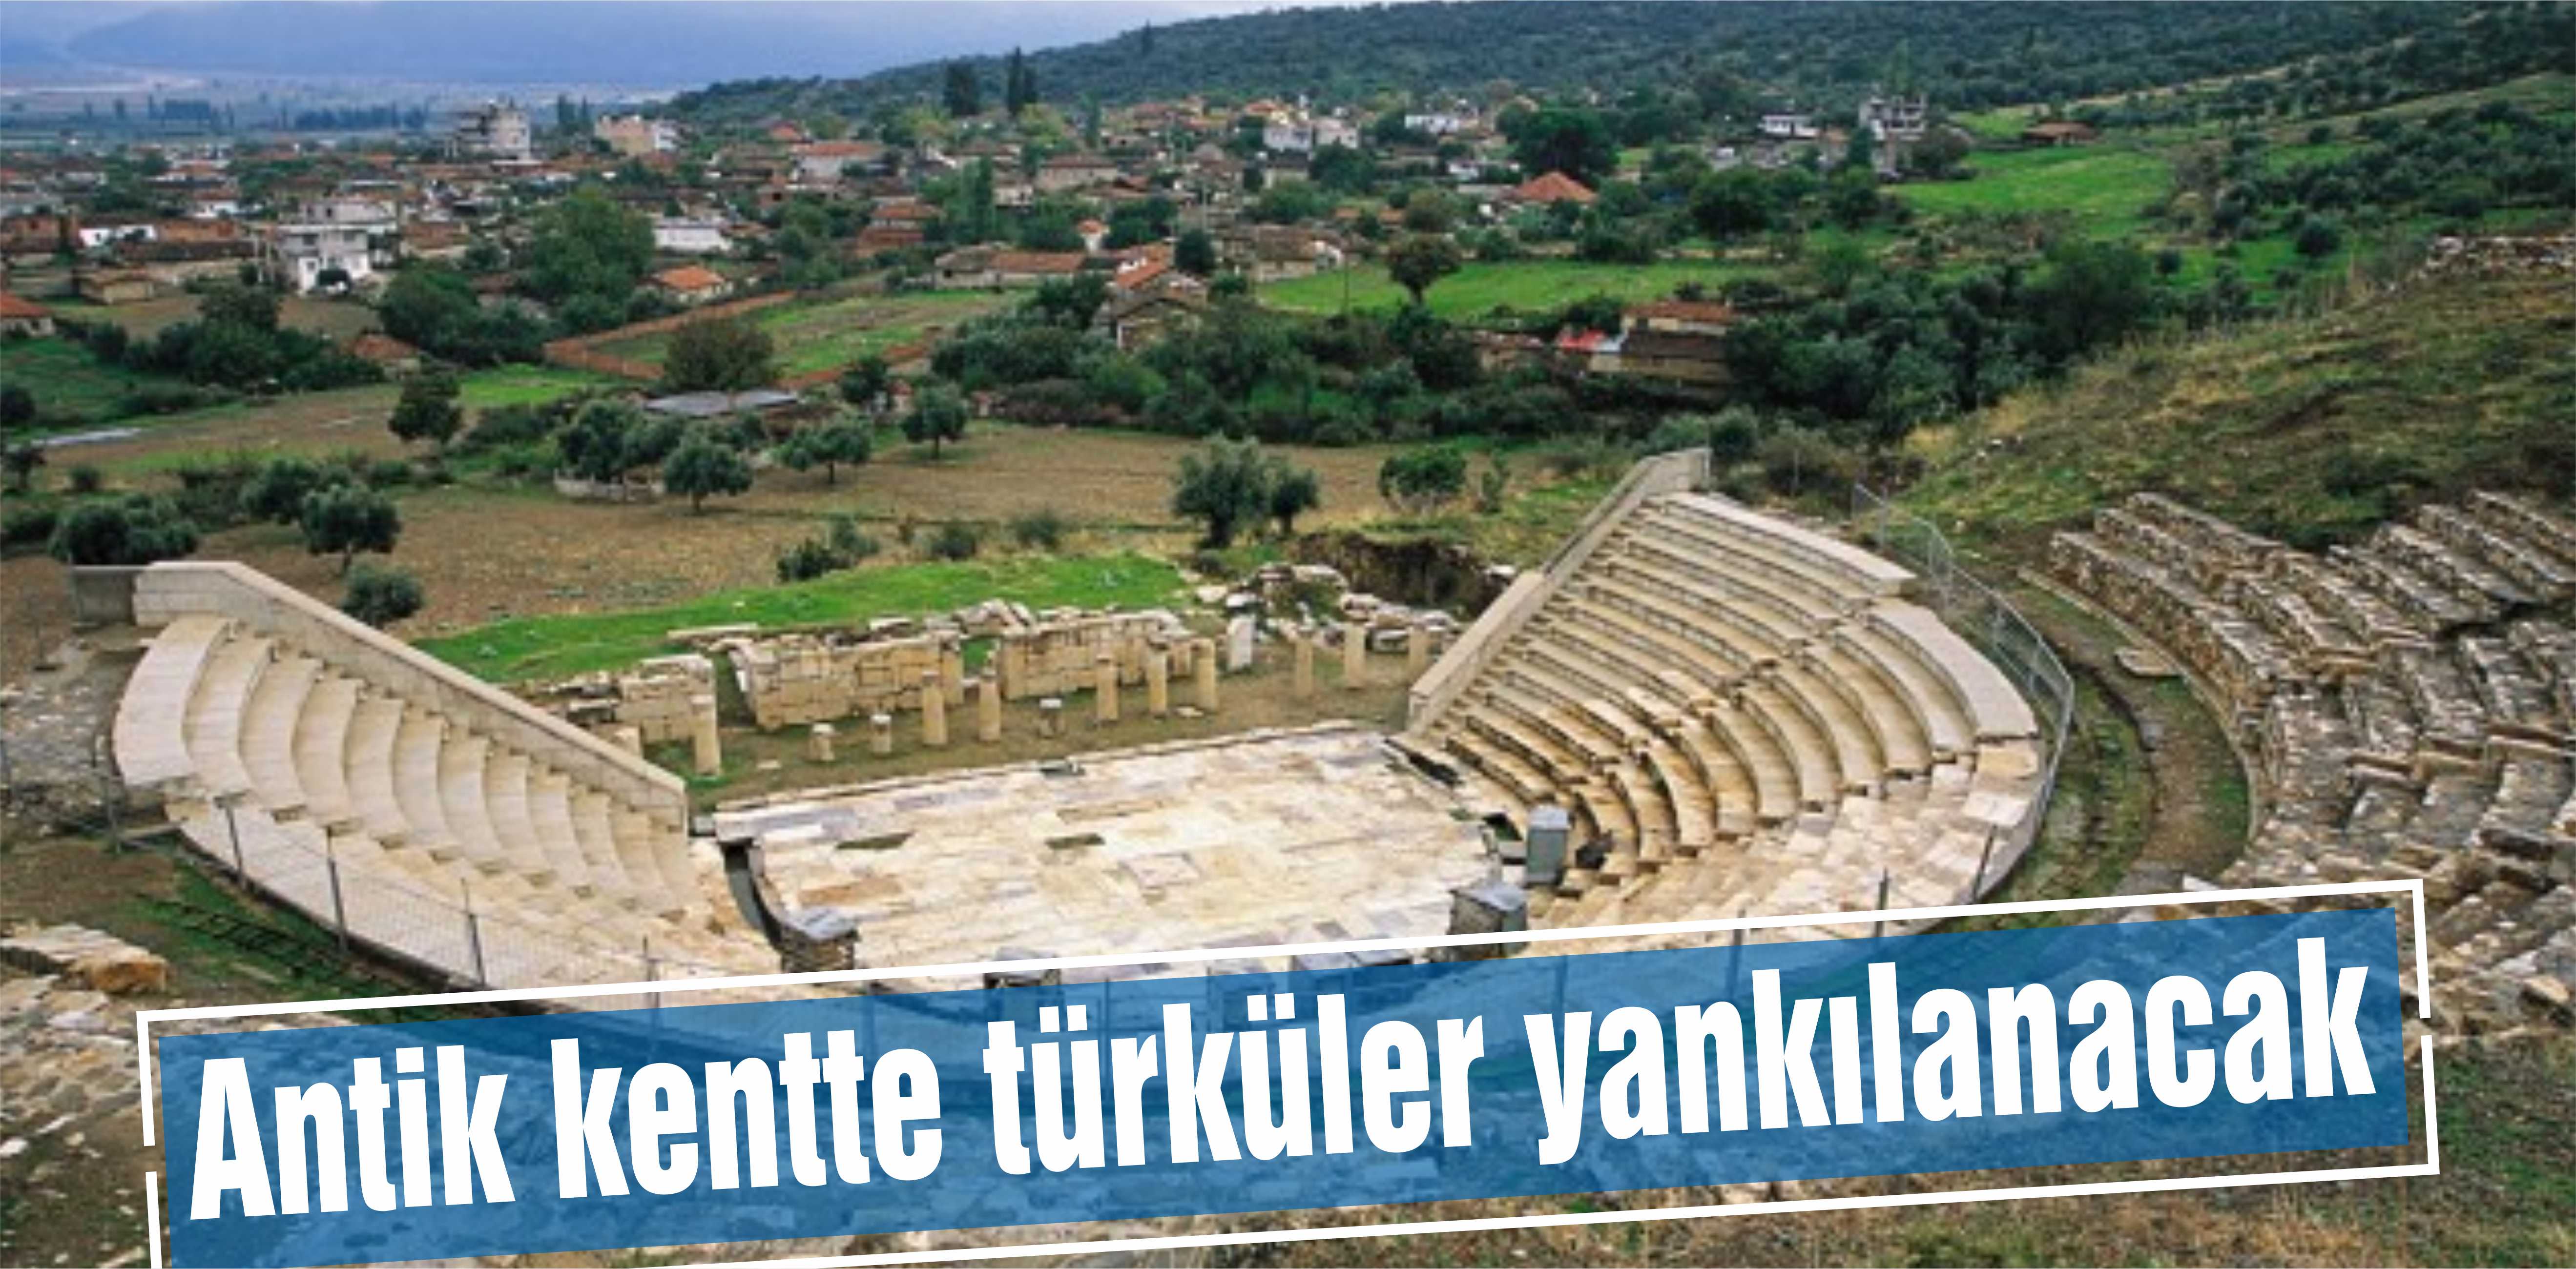 Antik kentte türküler yankılanacak